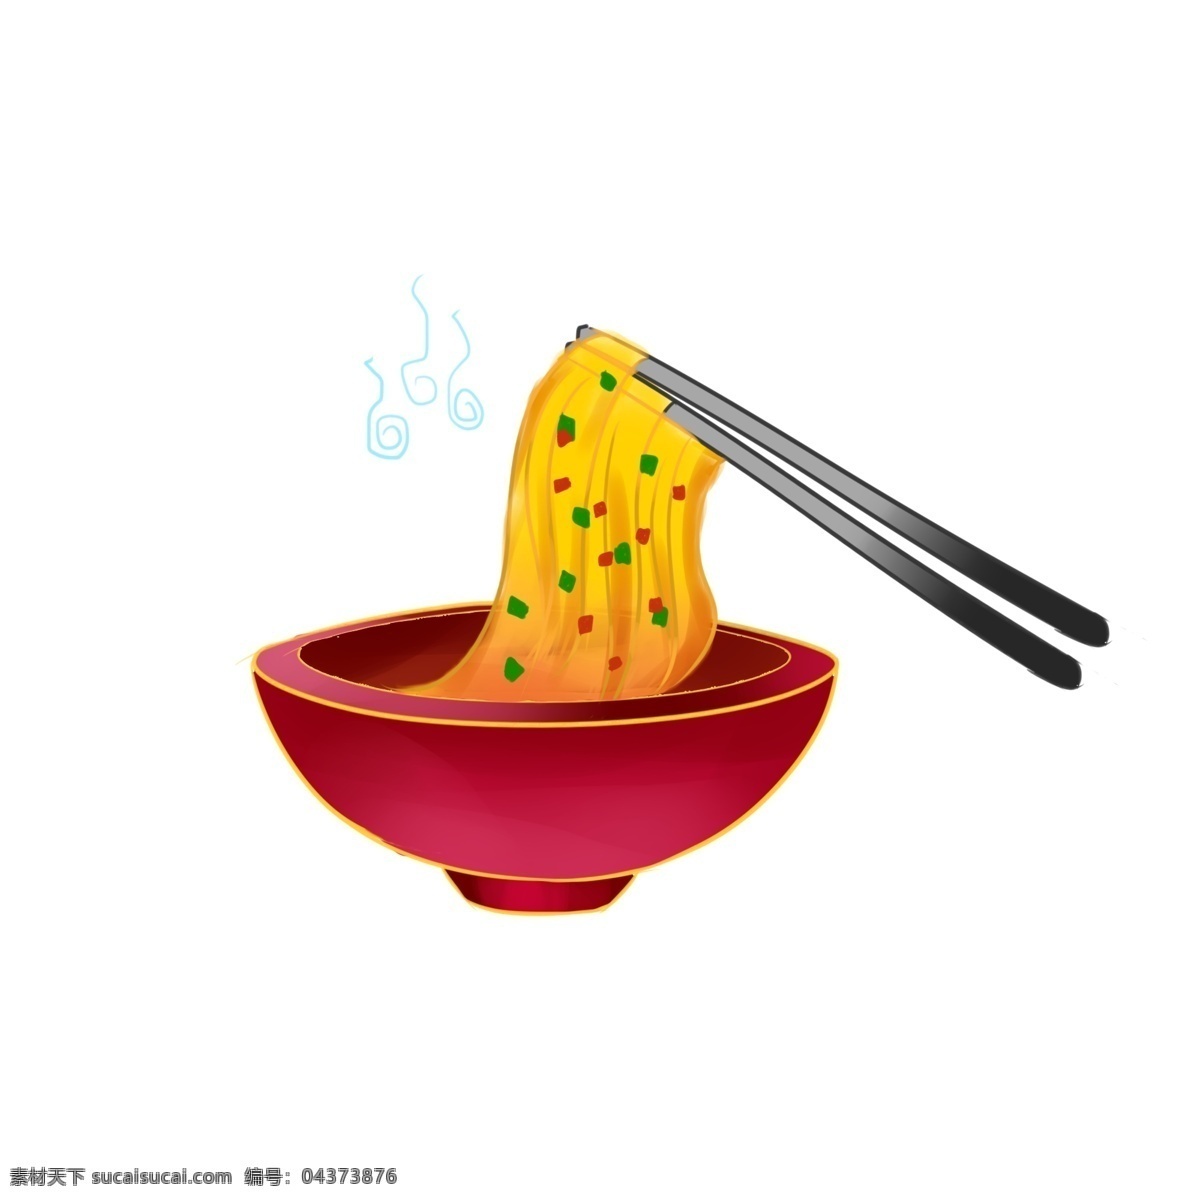 中华 美食 地道 面条 手绘 卡通 中华美食 手绘风 卡通风 筷子 地道美食 红碗